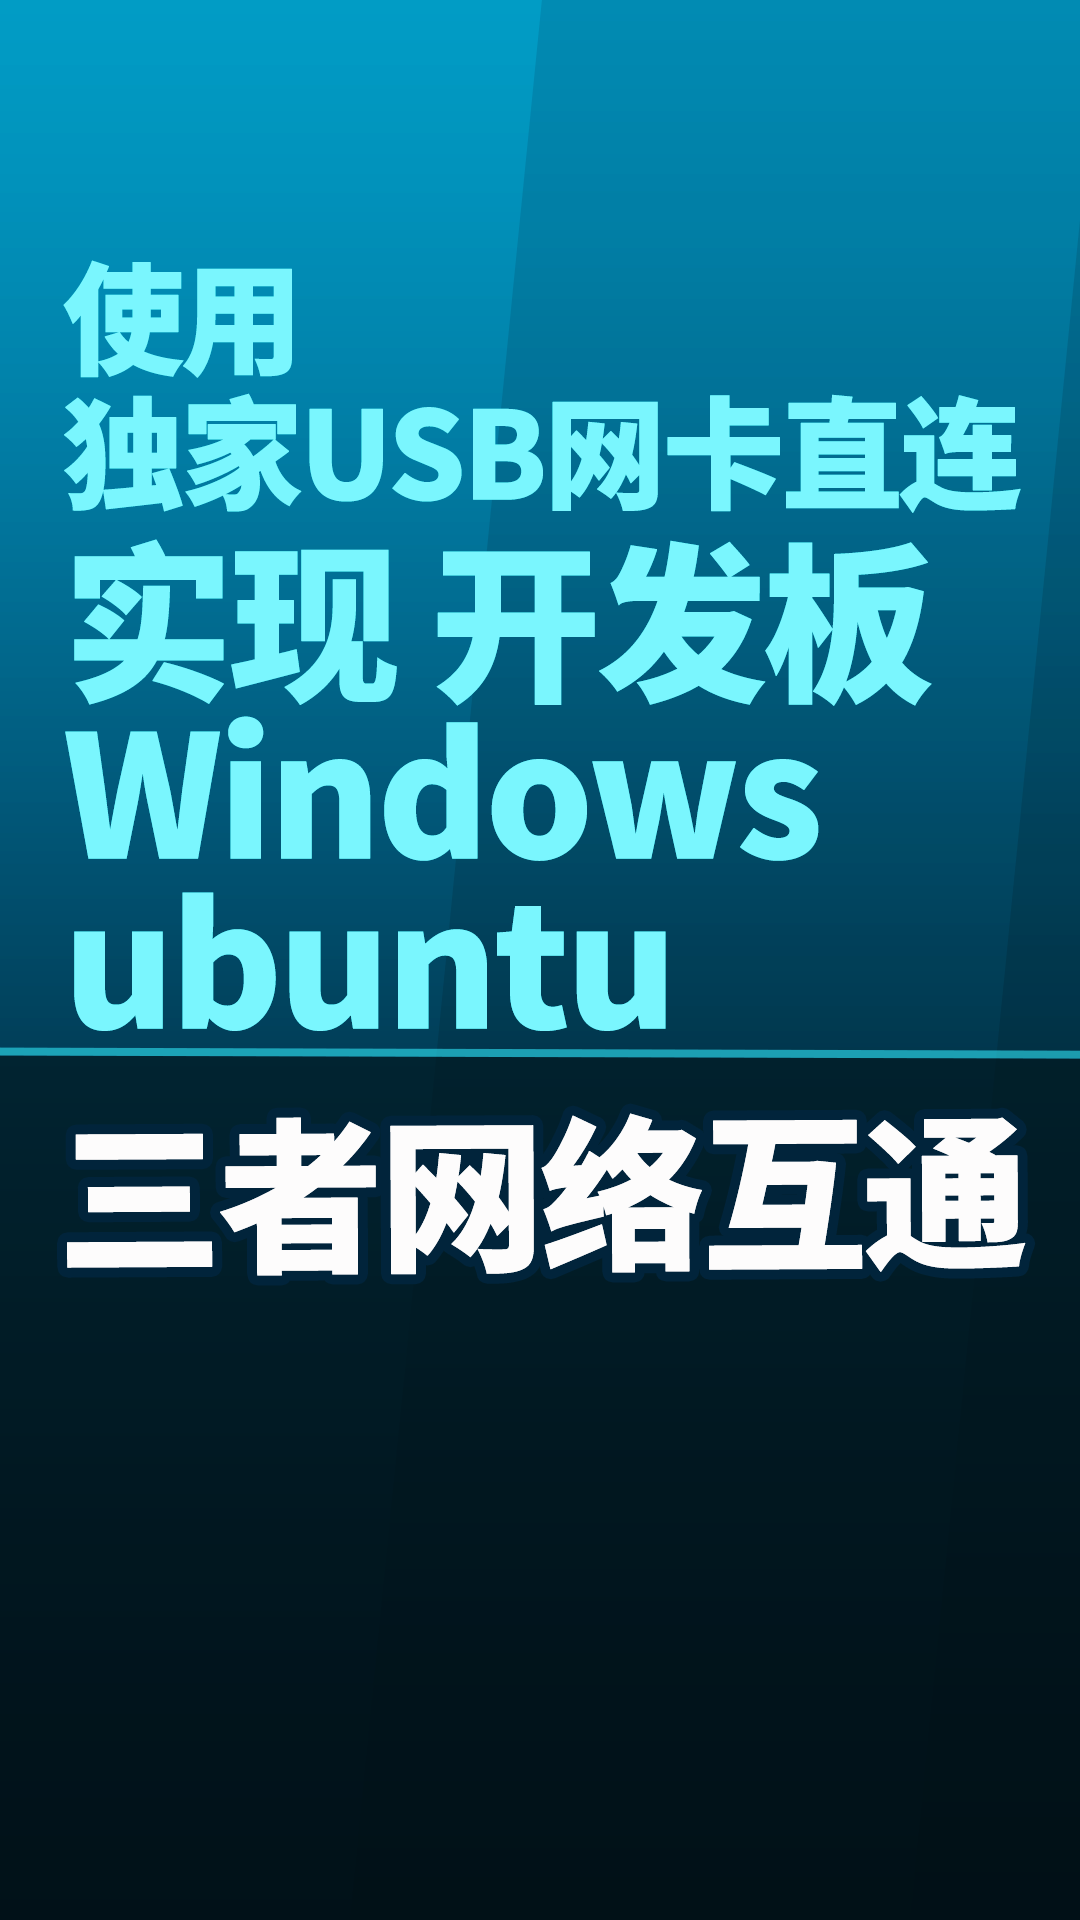 使用独家USB网卡直连实现 开发板 Windows ubuntu三者网络互通#嵌入式开发 